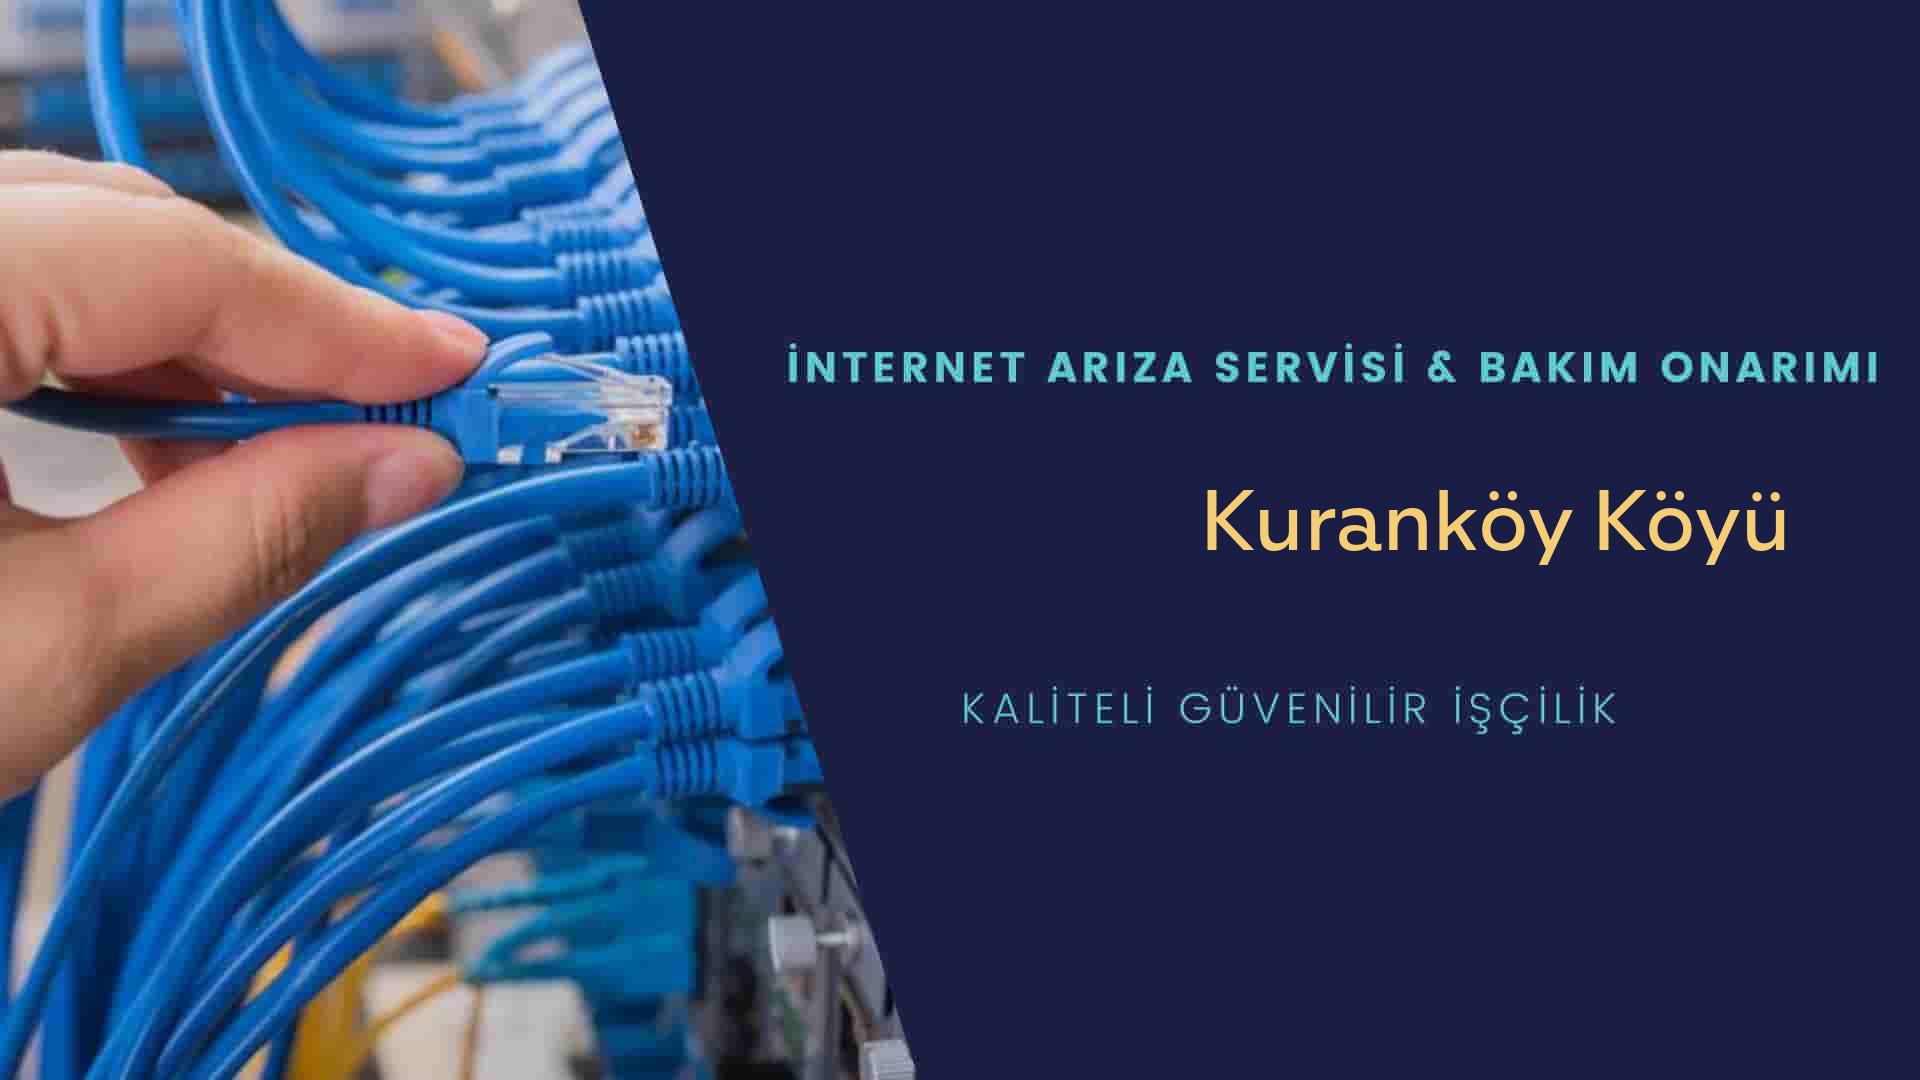 Kuranköy Köyü internet kablosu çekimi yapan yerler veya elektrikçiler mi? arıyorsunuz doğru yerdesiniz o zaman sizlere 7/24 yardımcı olacak profesyonel ustalarımız bir telefon kadar yakındır size.